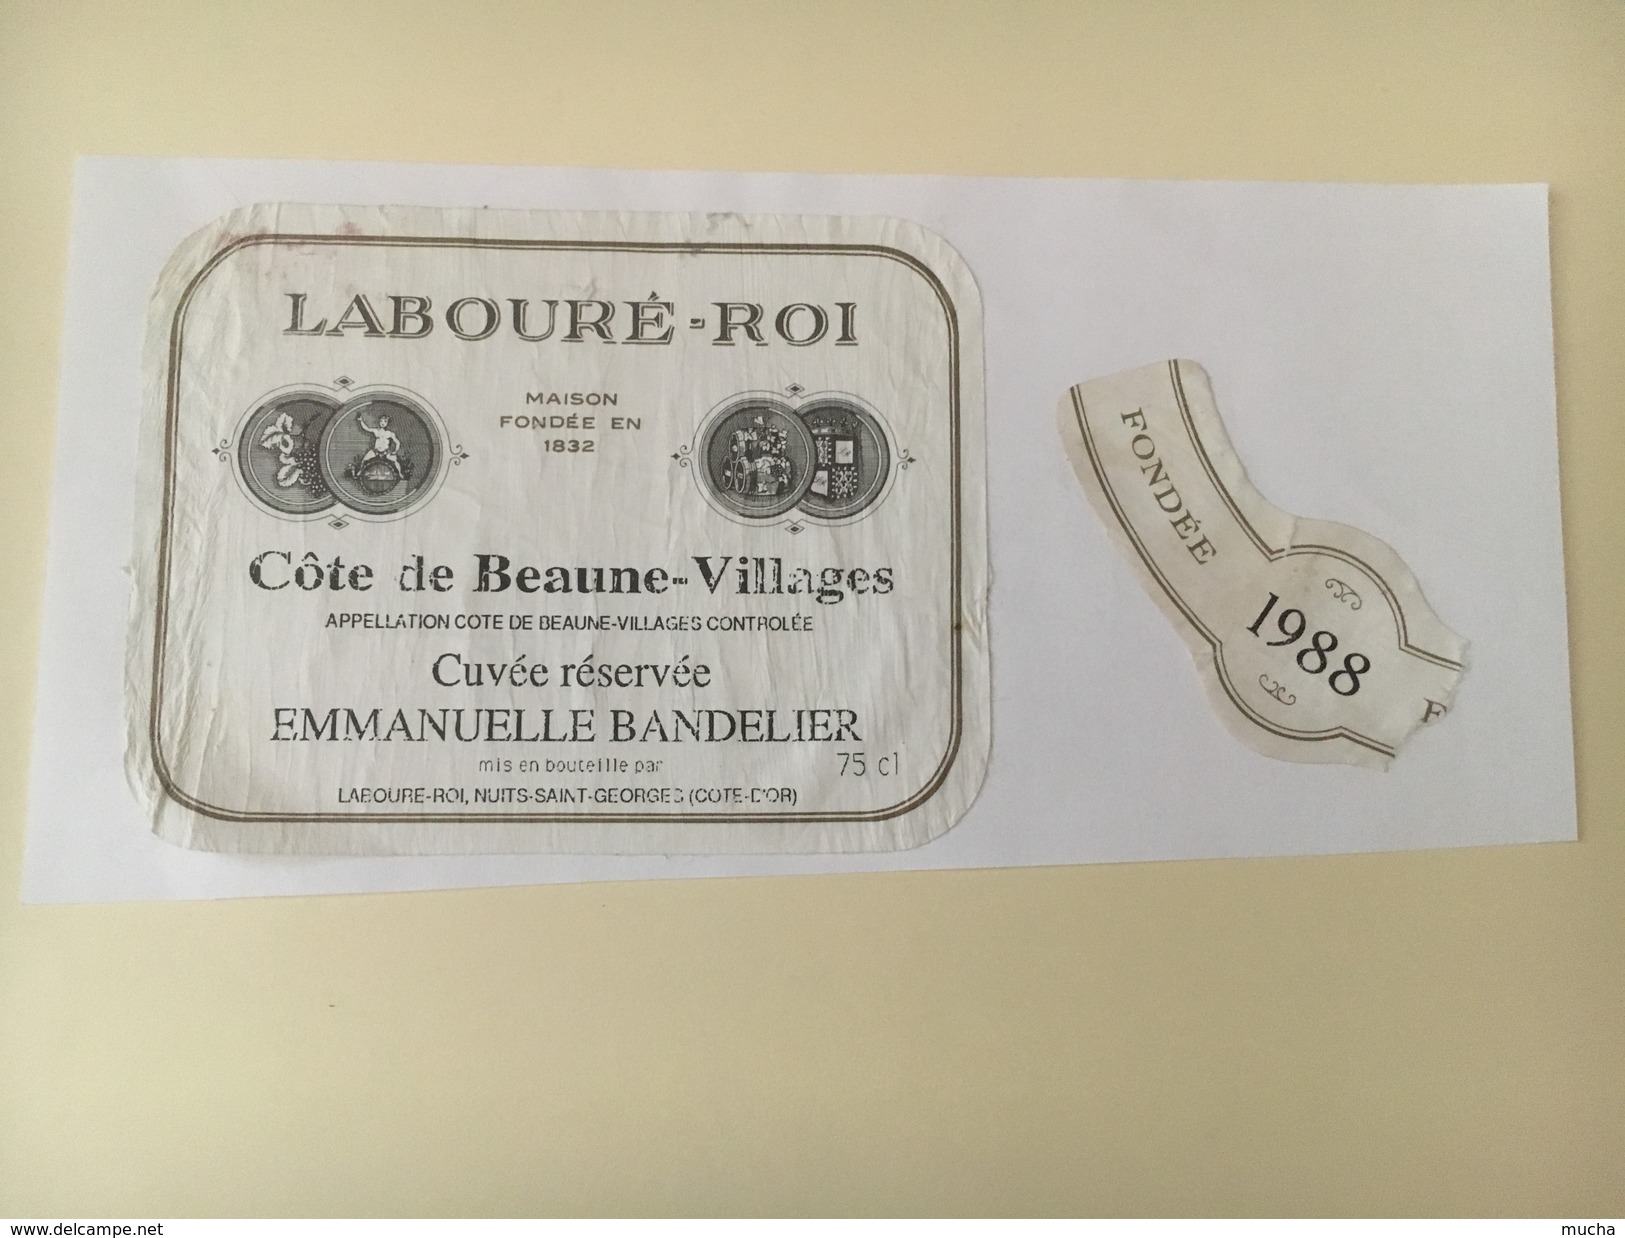 4520 - Côte De Beaune-Villages 1988 Cuvée Emmanuuelle Bandelier Labouré-Roi Collée Sur Papier - Bourgogne